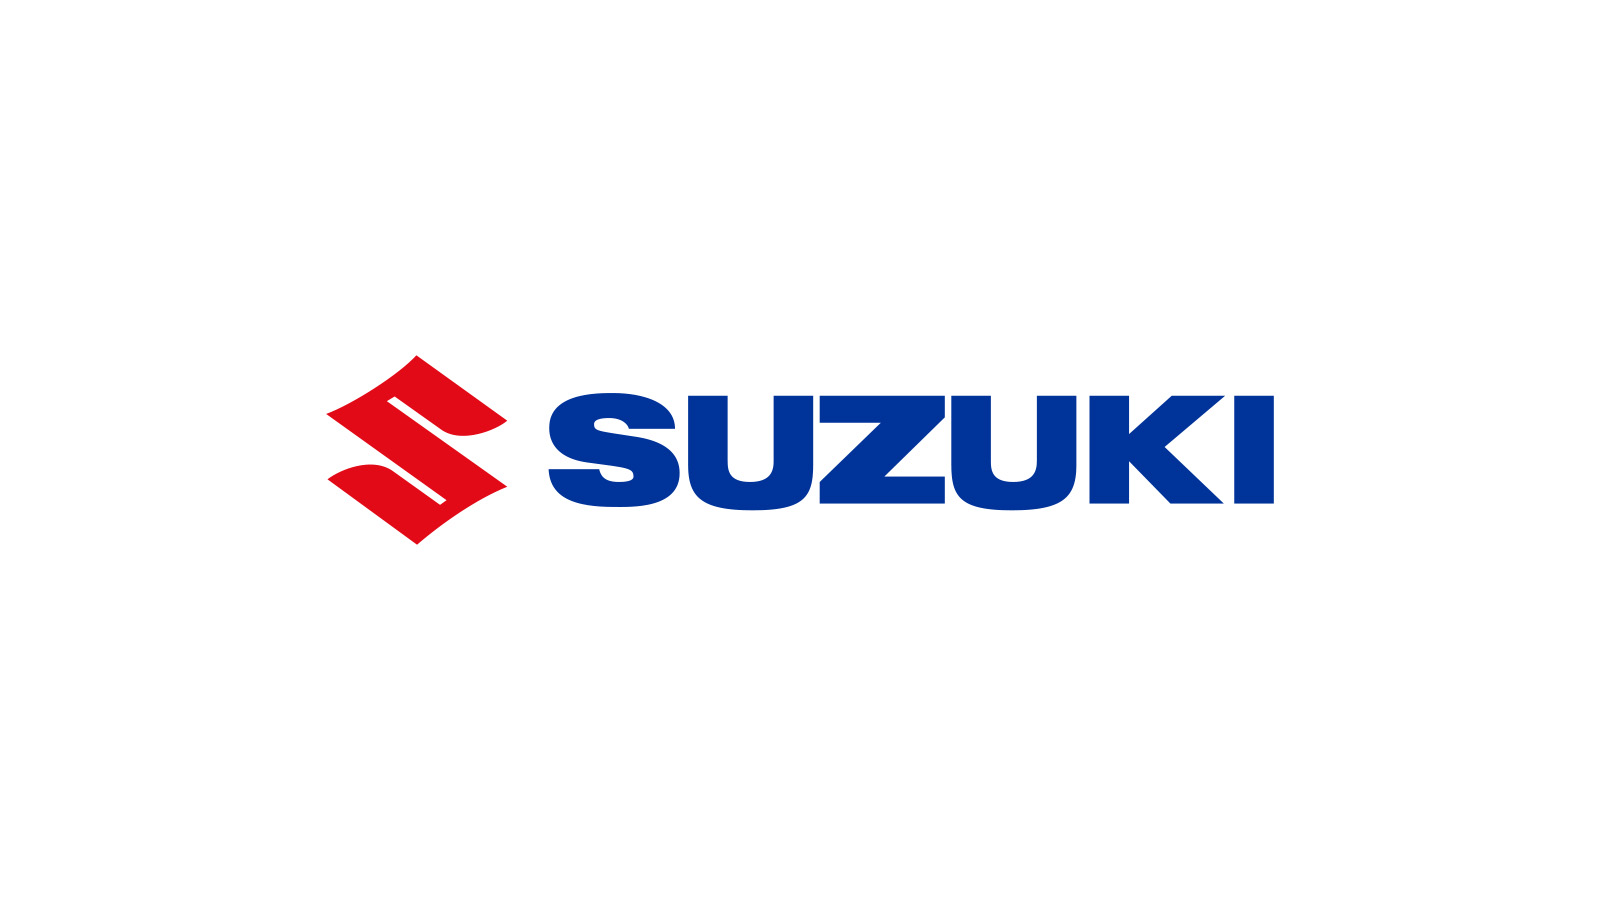 The new Suzuki S-Cross